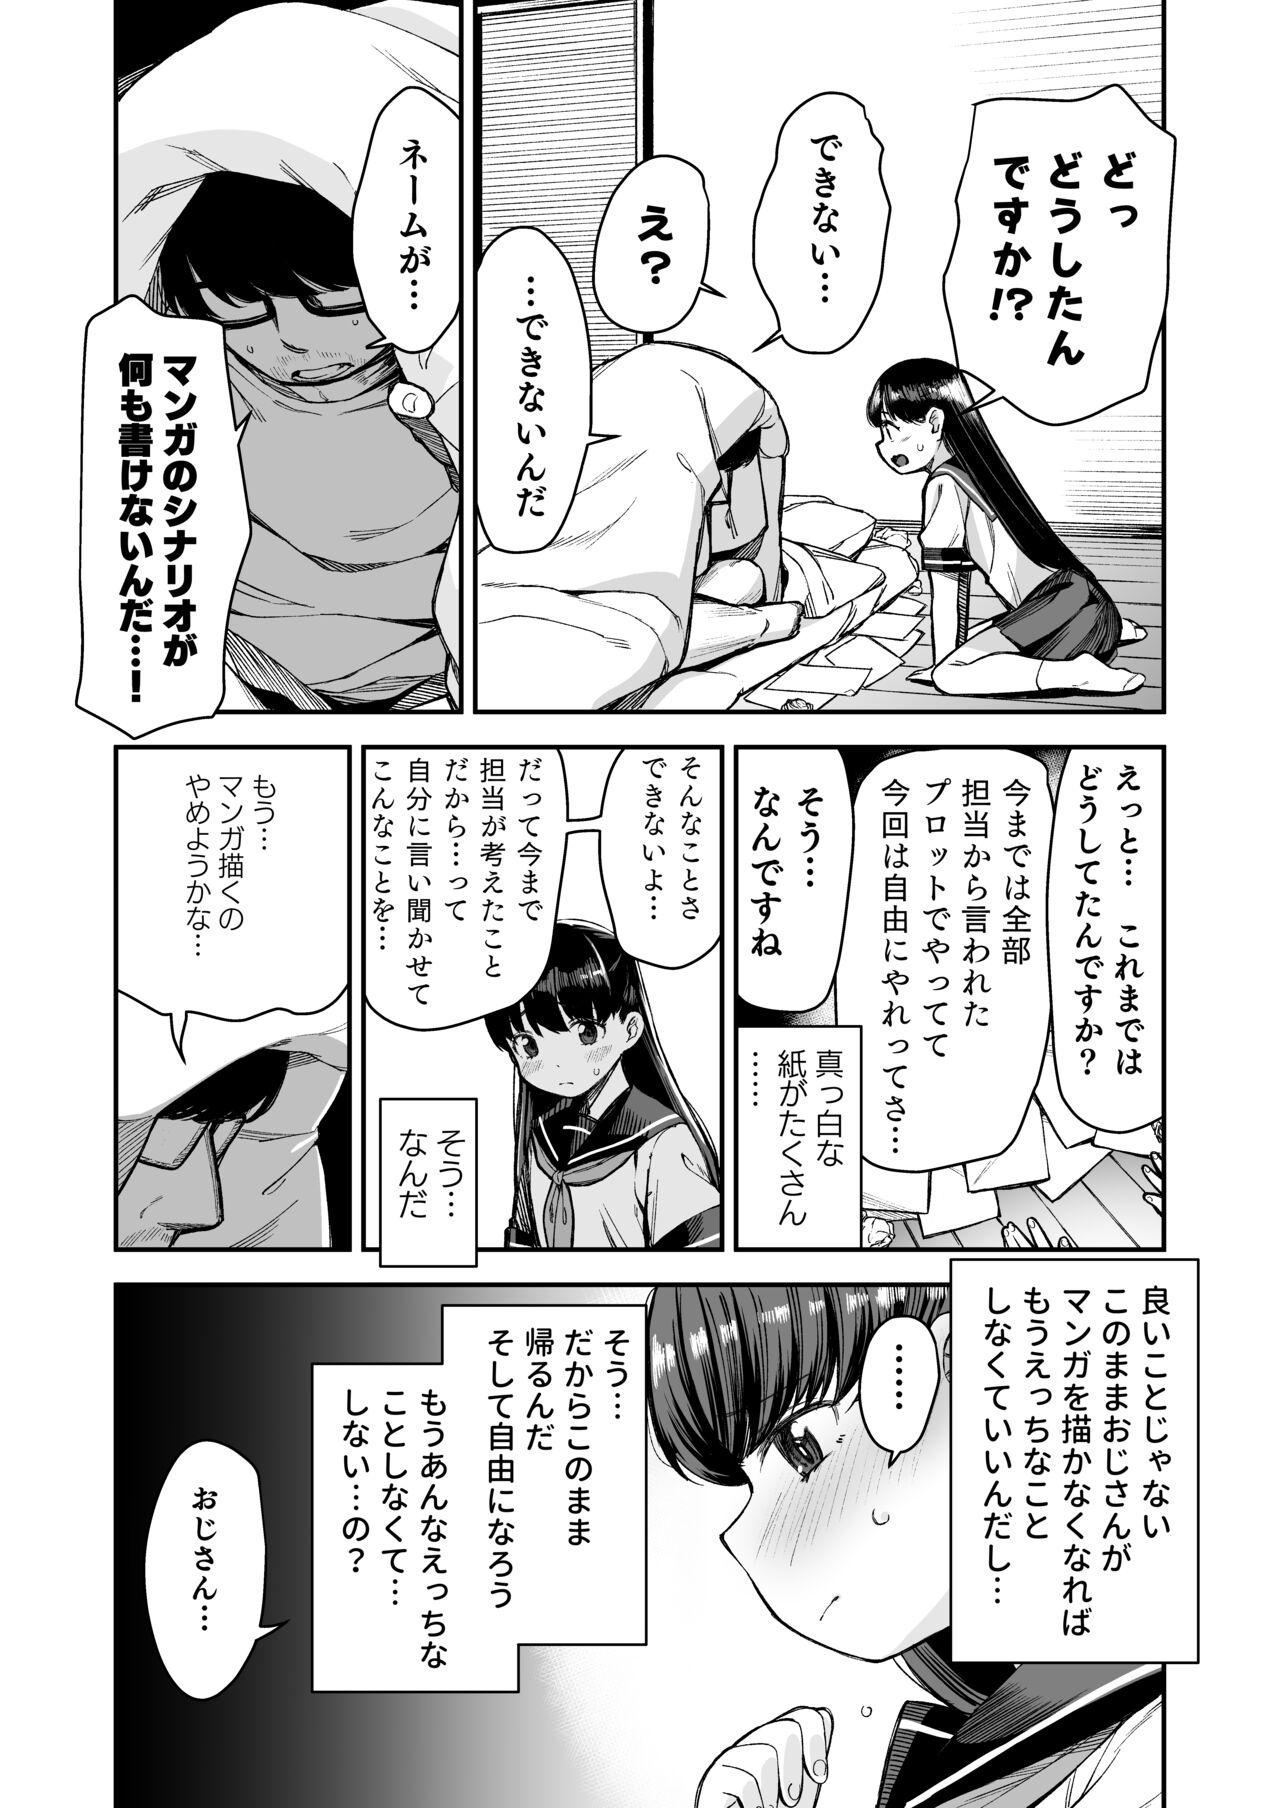 Do-M Shoujo wa, Manga no Naka de. 26